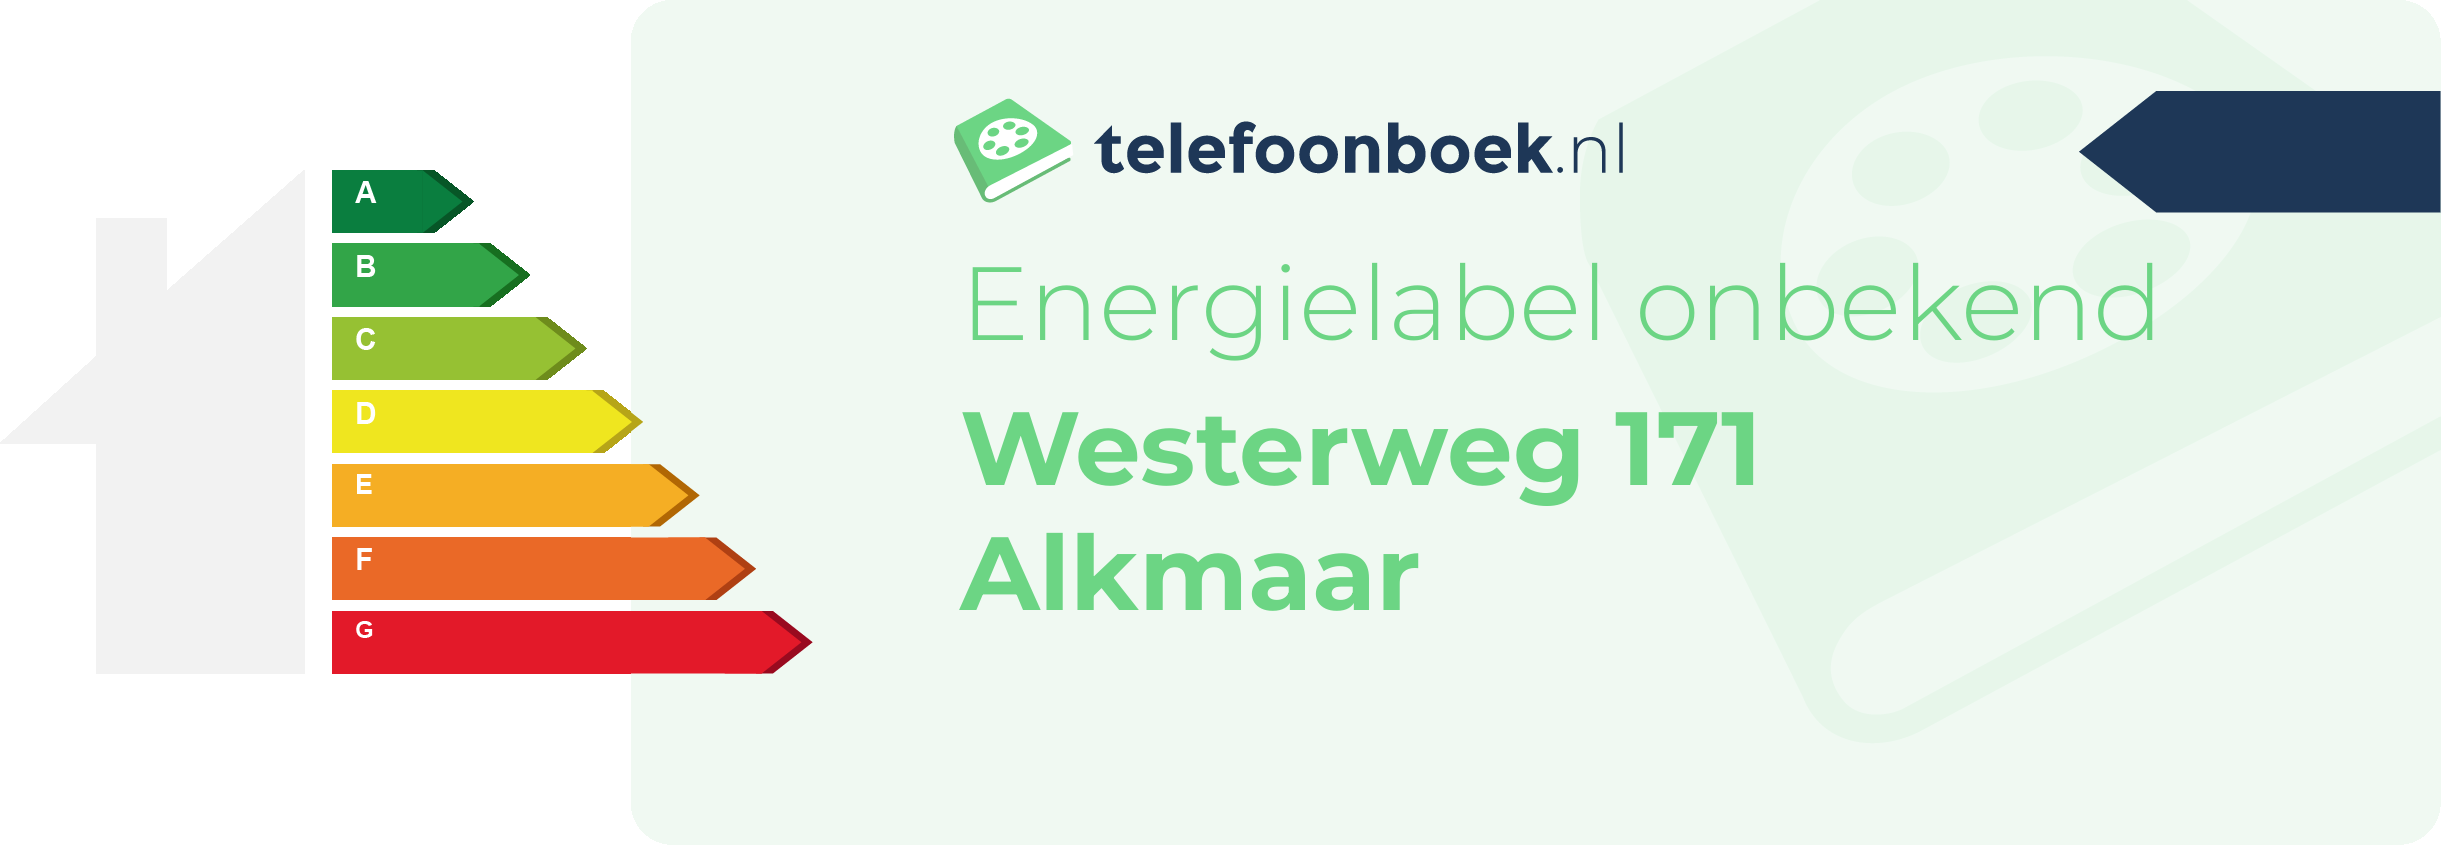 Energielabel Westerweg 171 Alkmaar